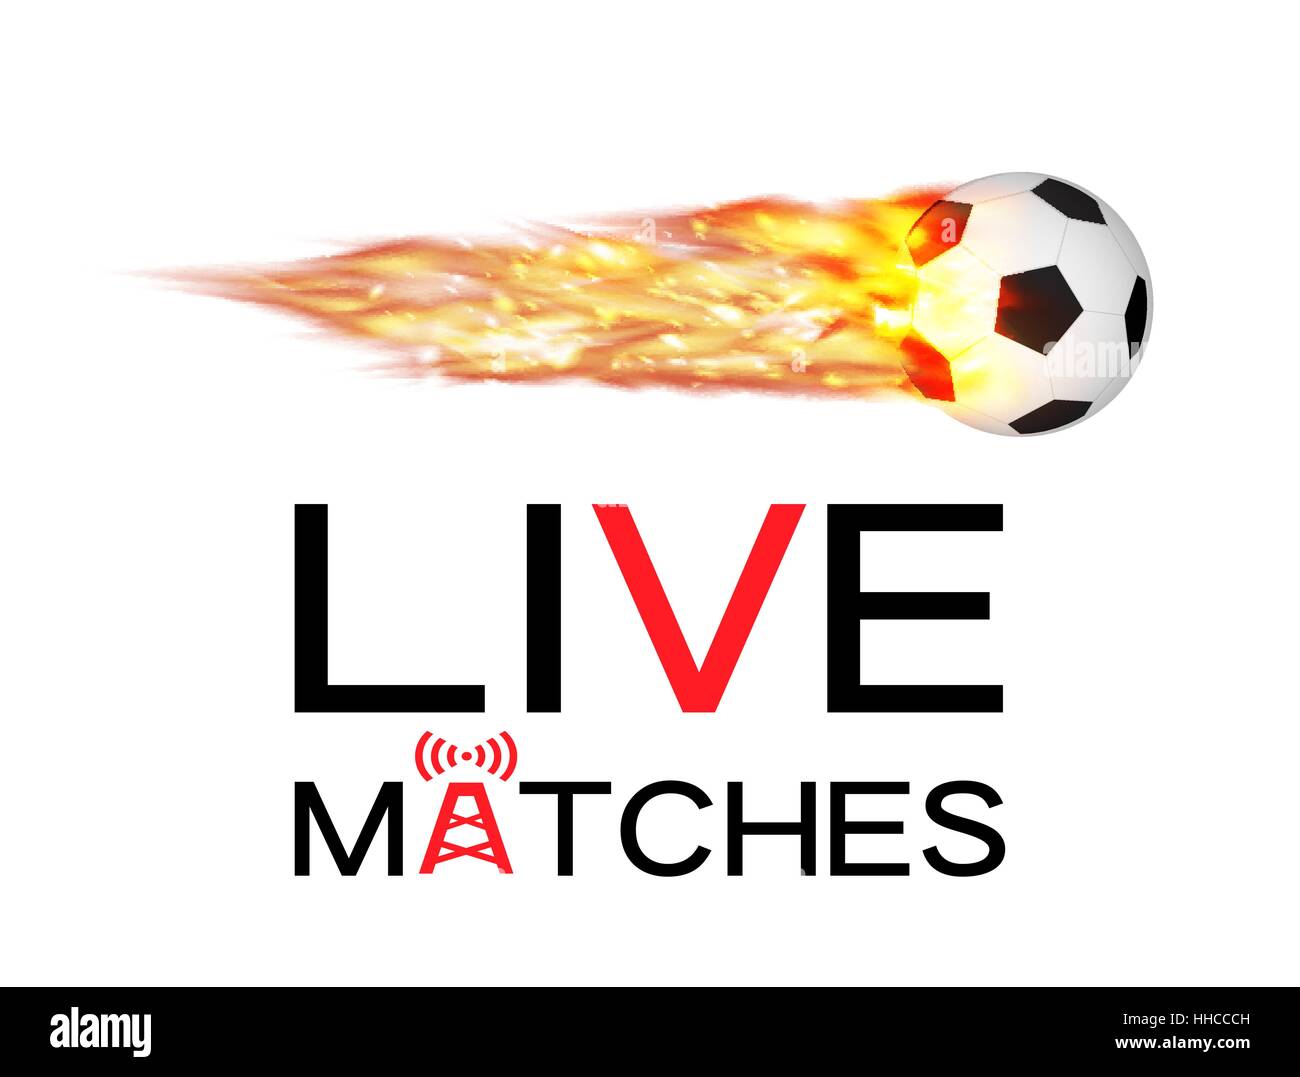 Live soccer football match con il calcio fuoco ardente logo Illustrazione Vettoriale